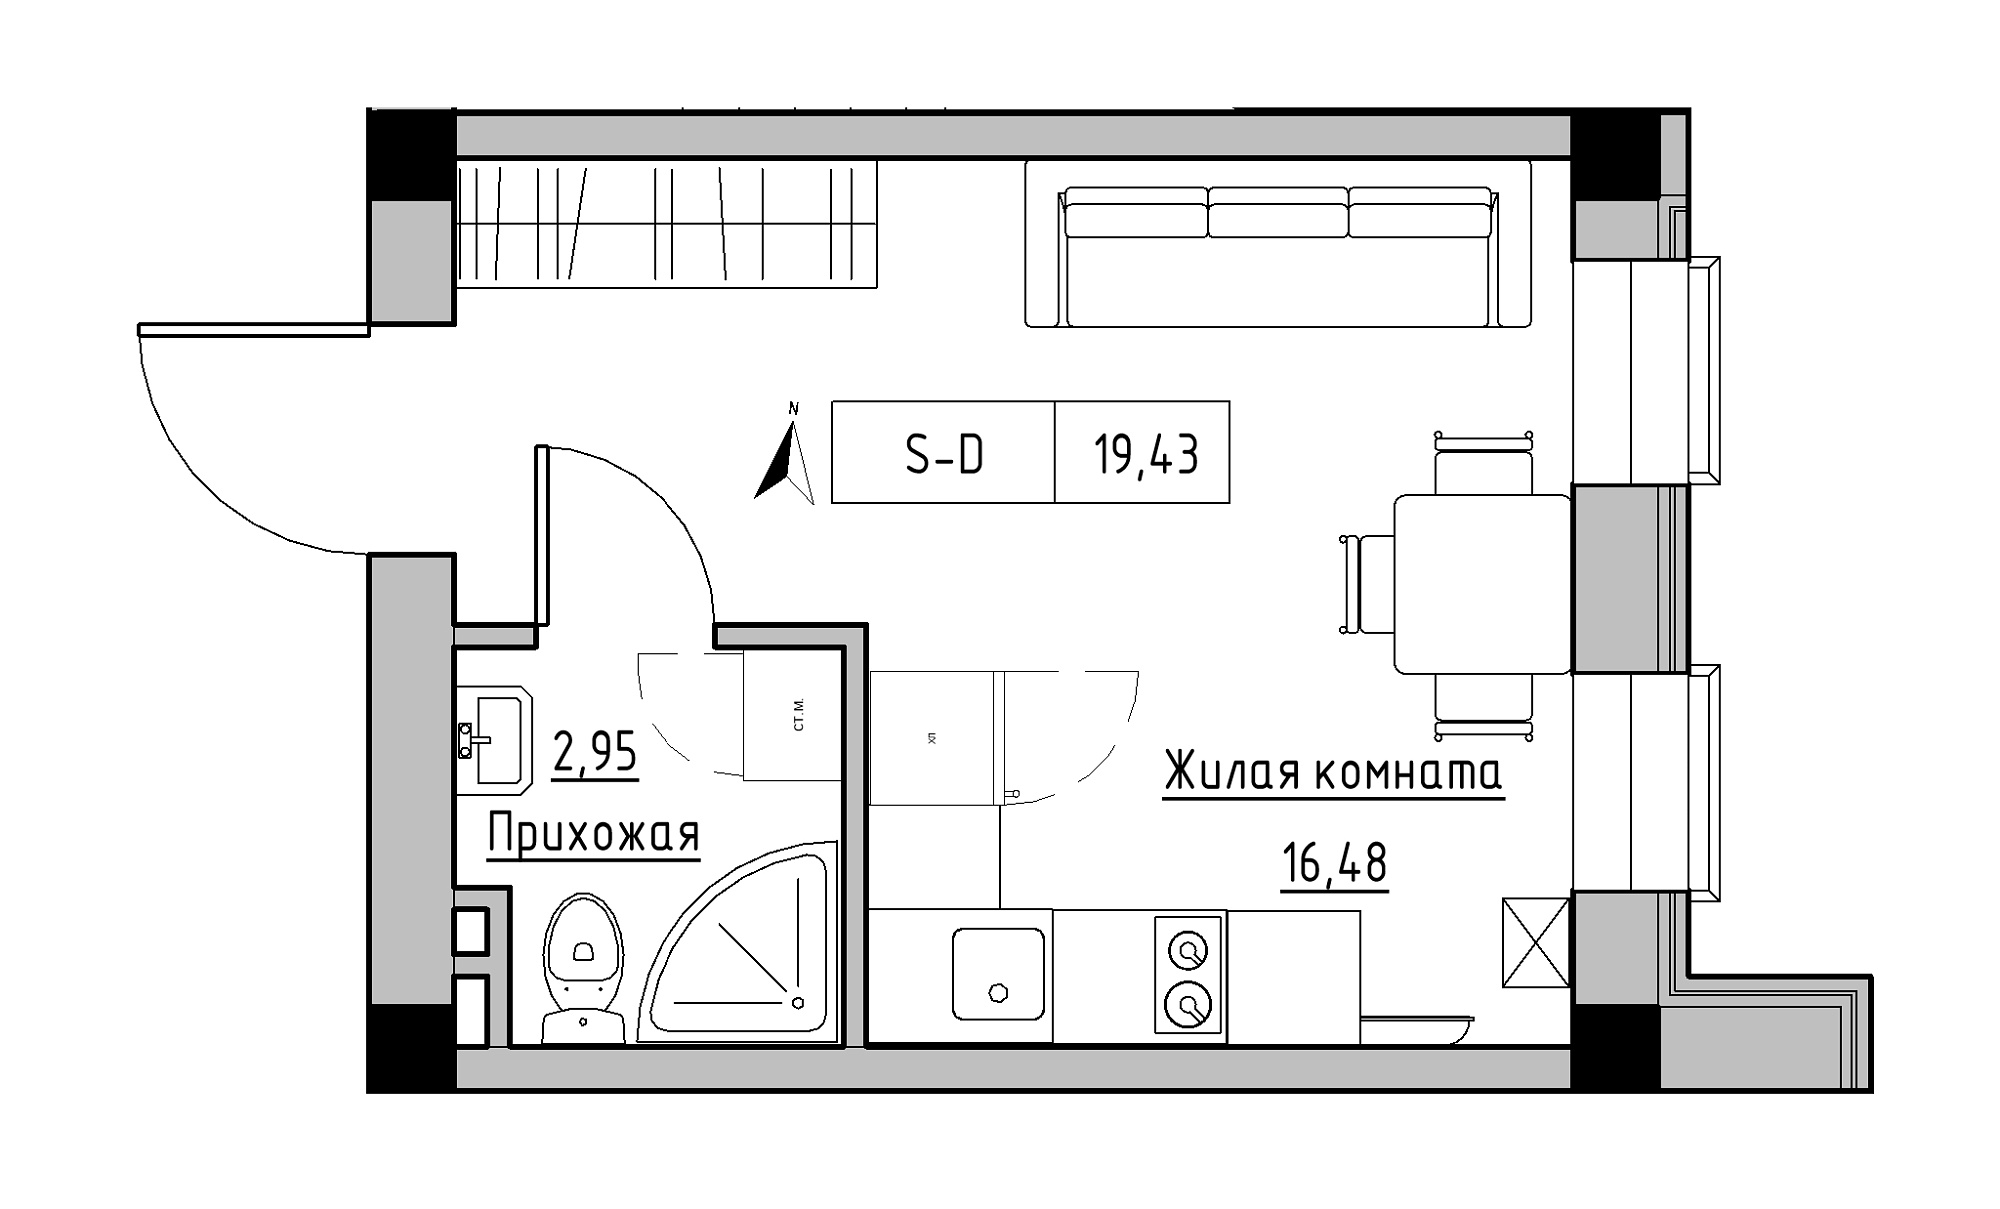 Планування Smart-квартира площею 19.43м2, KS-023-01/0006.